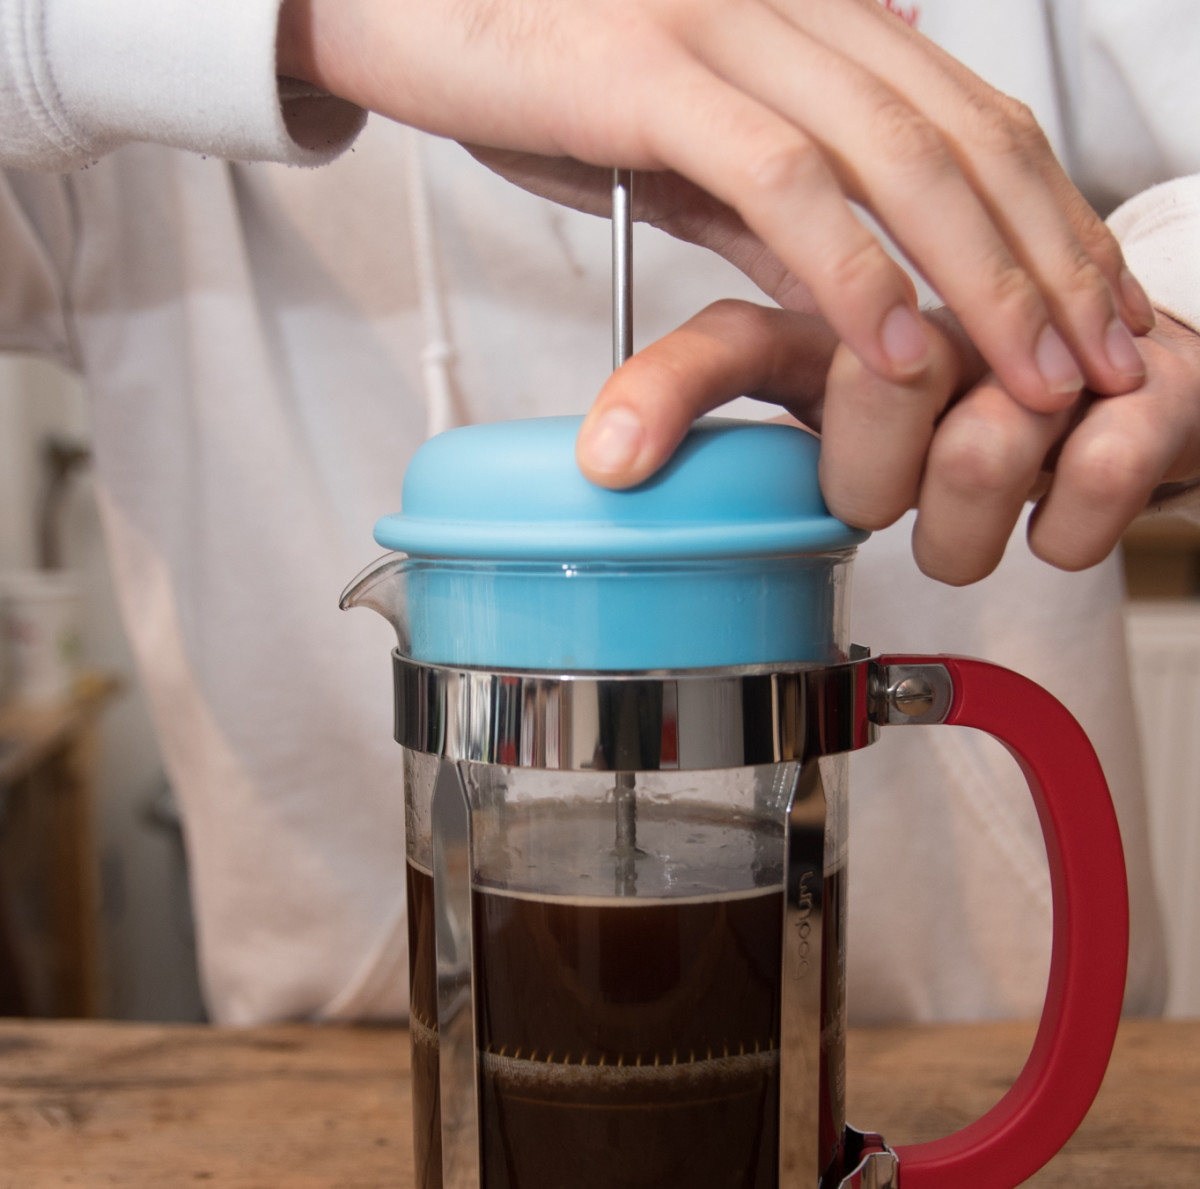 Gewoon overlopen Ploeg het is mooi Koffie op jouw manier – De Franse Pers | Jones Brothers Coffee